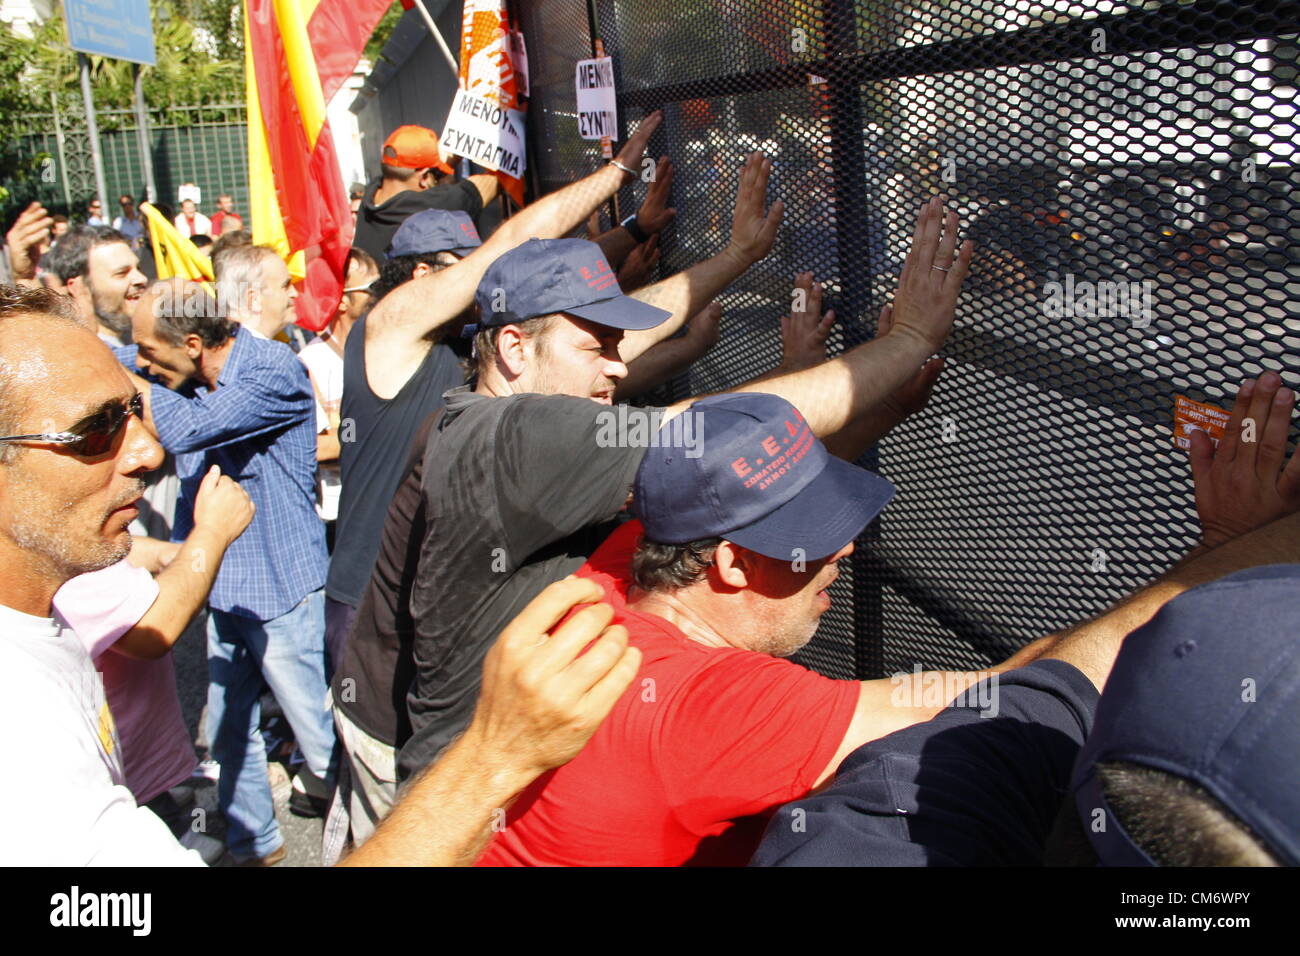 Au cours des affrontements de protestation de l'Union européenne, la Grèce, Athènes, 18 Octobre 2012 Banque D'Images